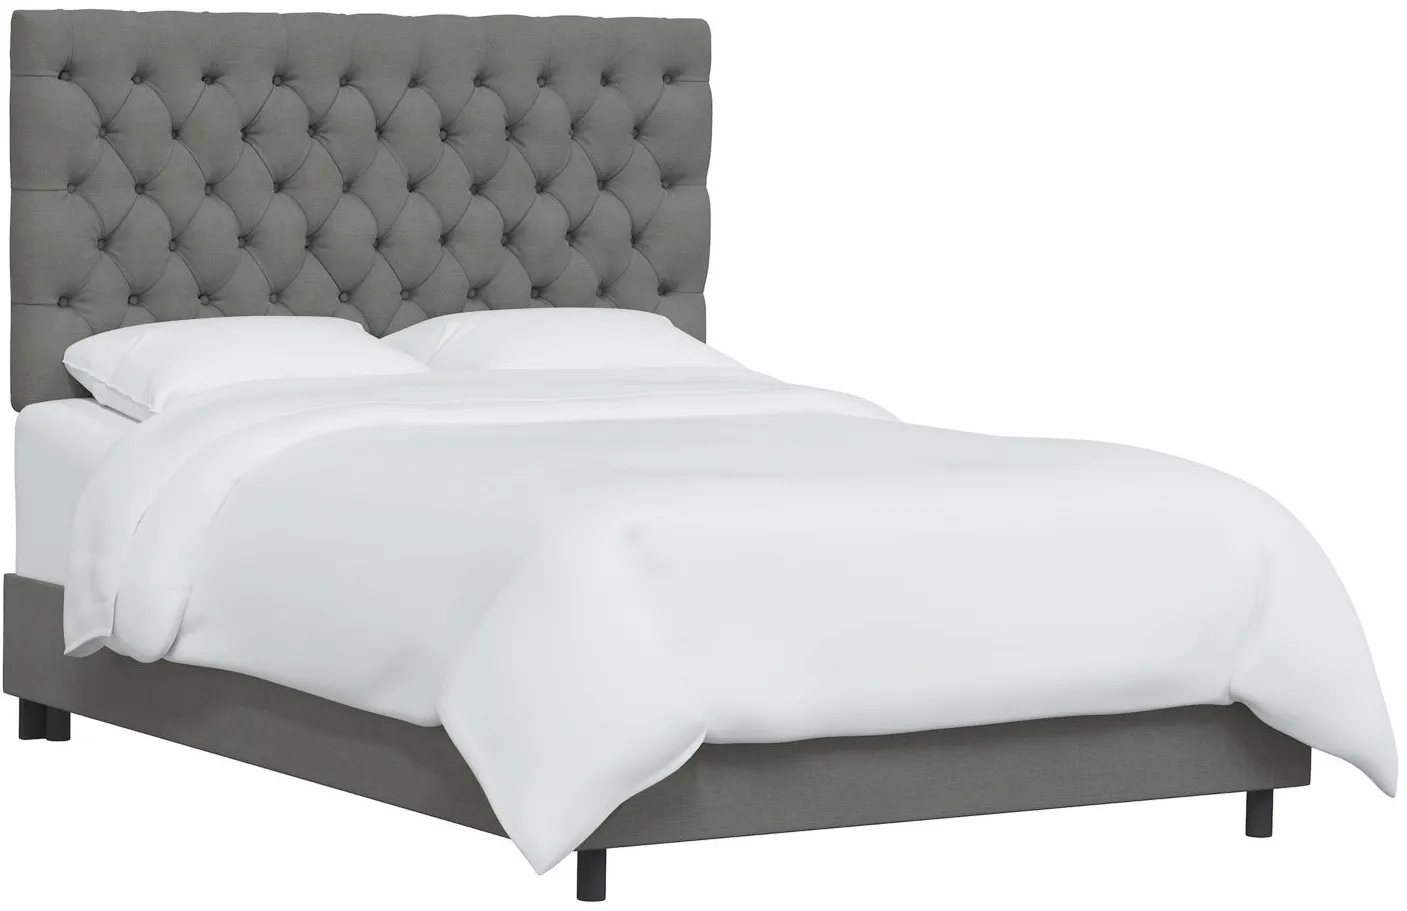 Queensbury Bed in Linen Gray by Skyline